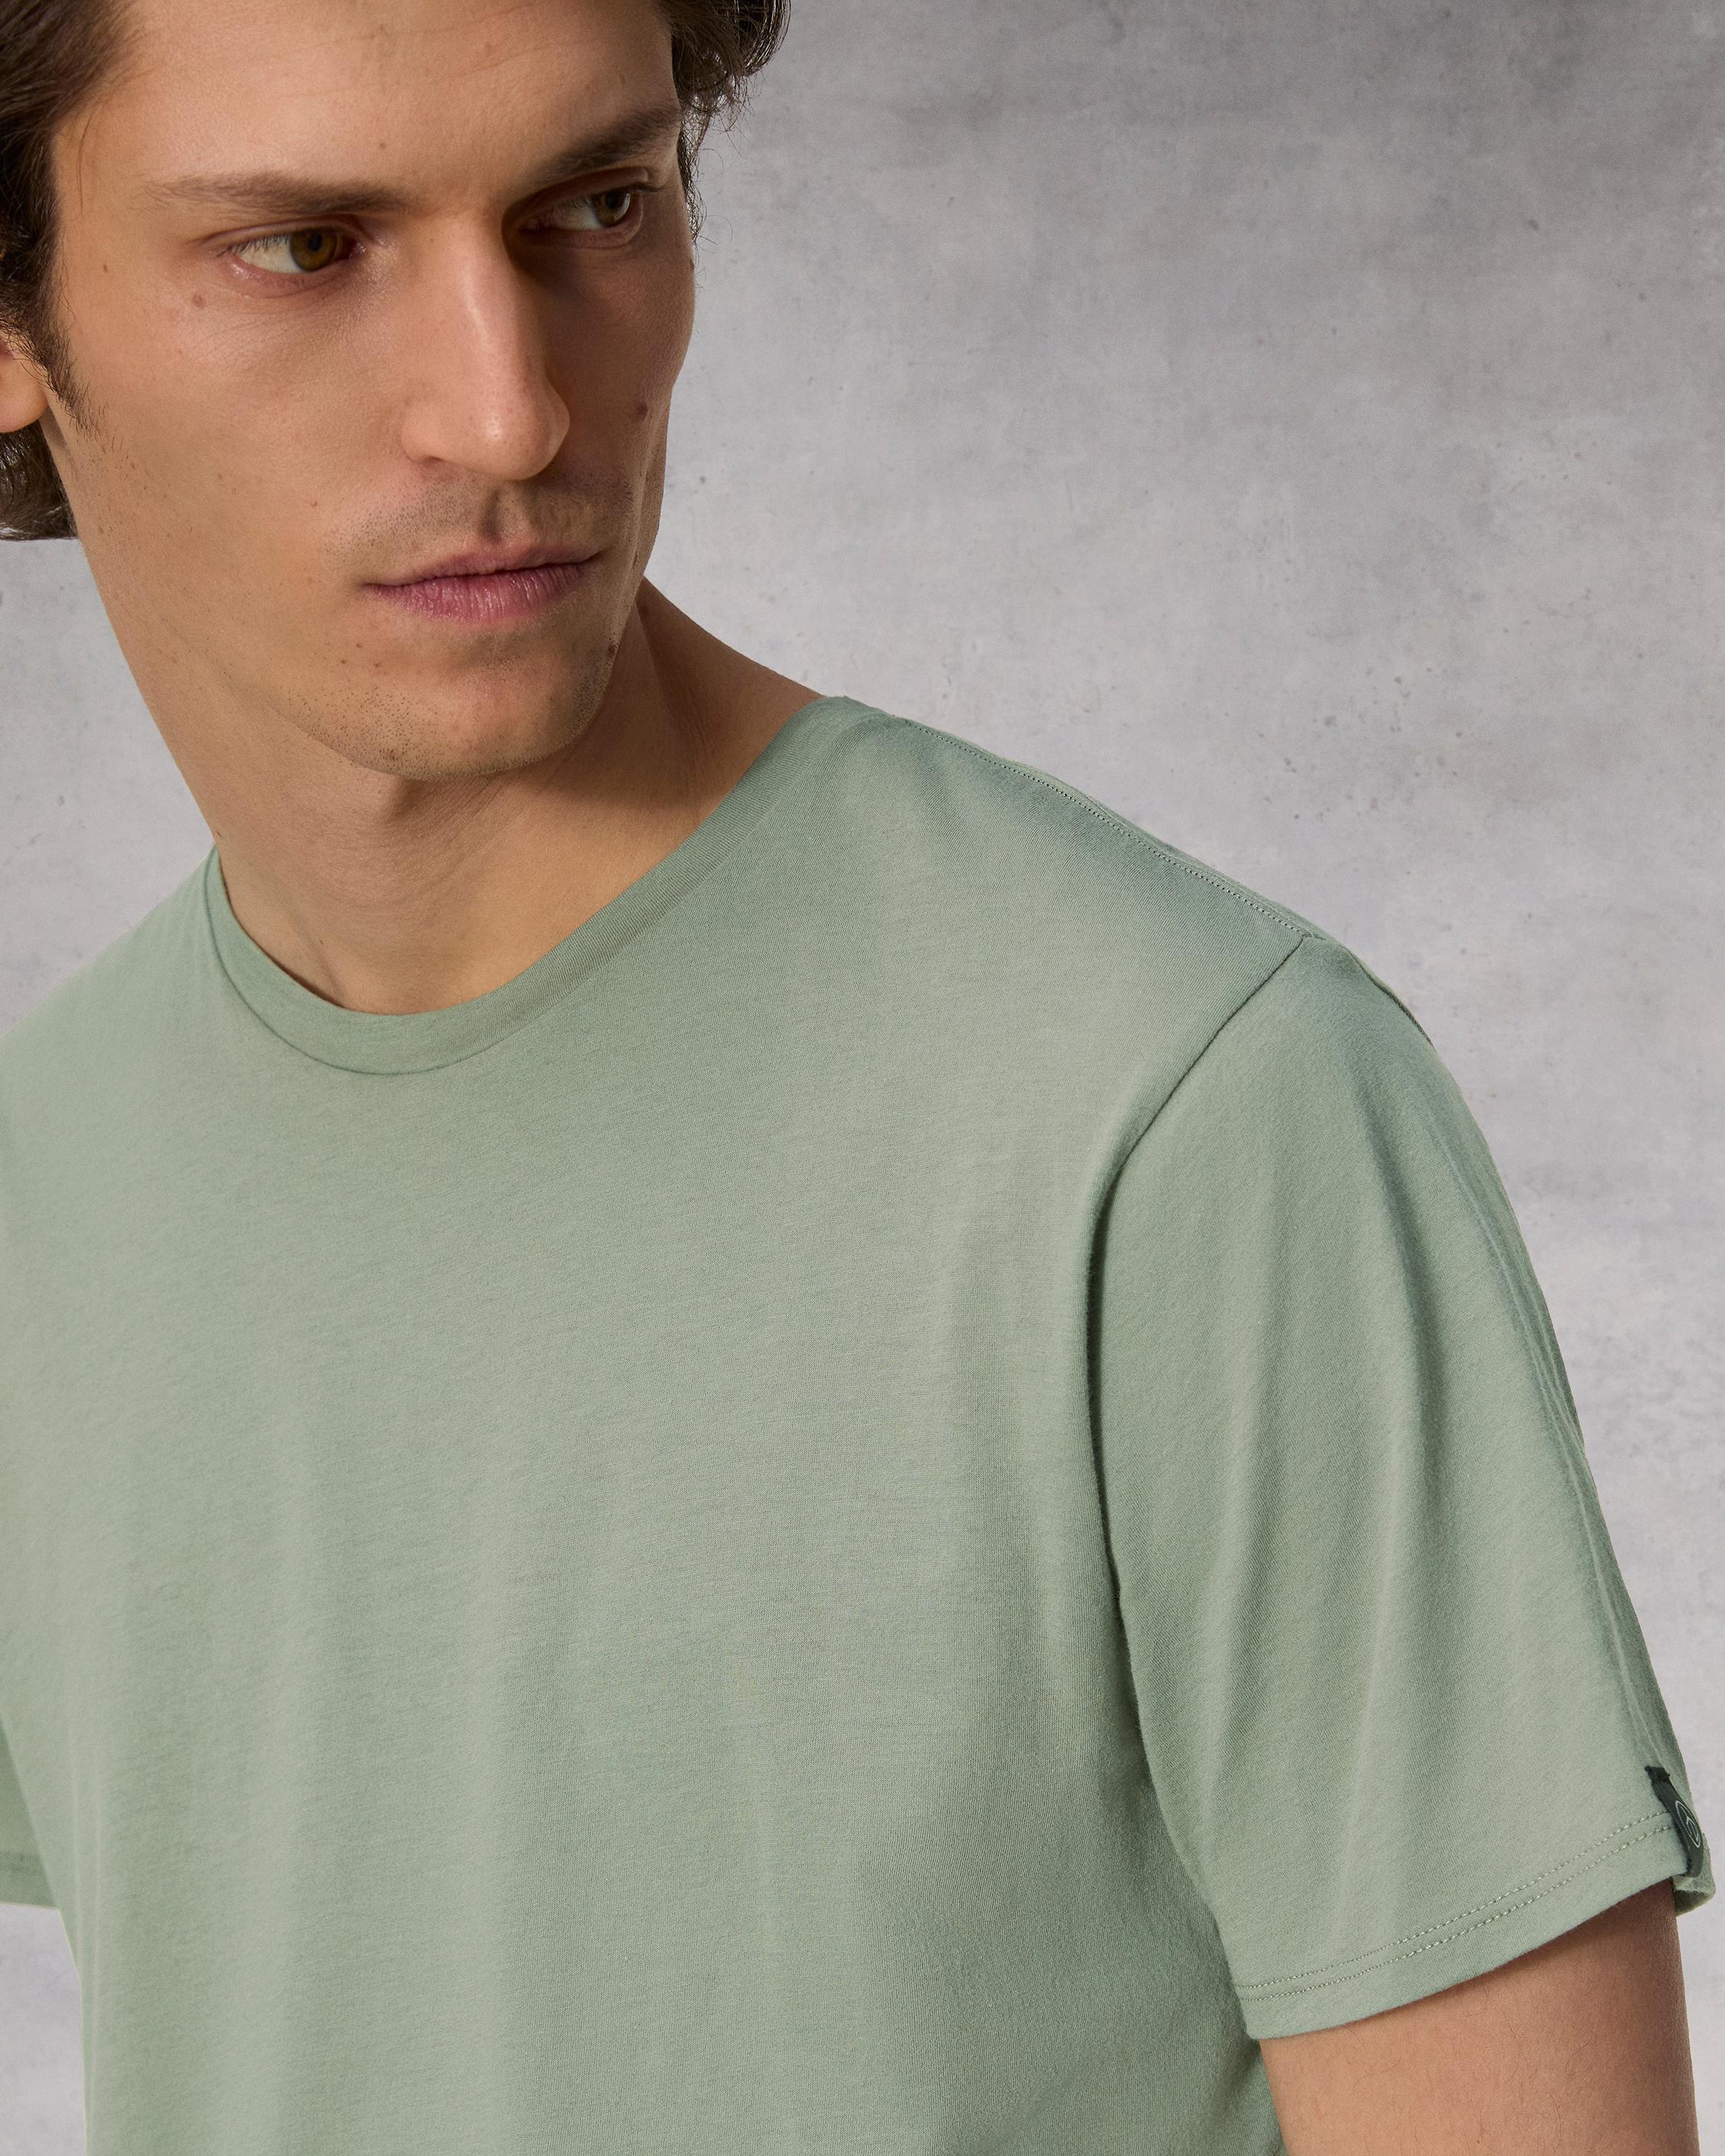 Zero Gravity Classic Tee
Cotton T-Shirt - 6